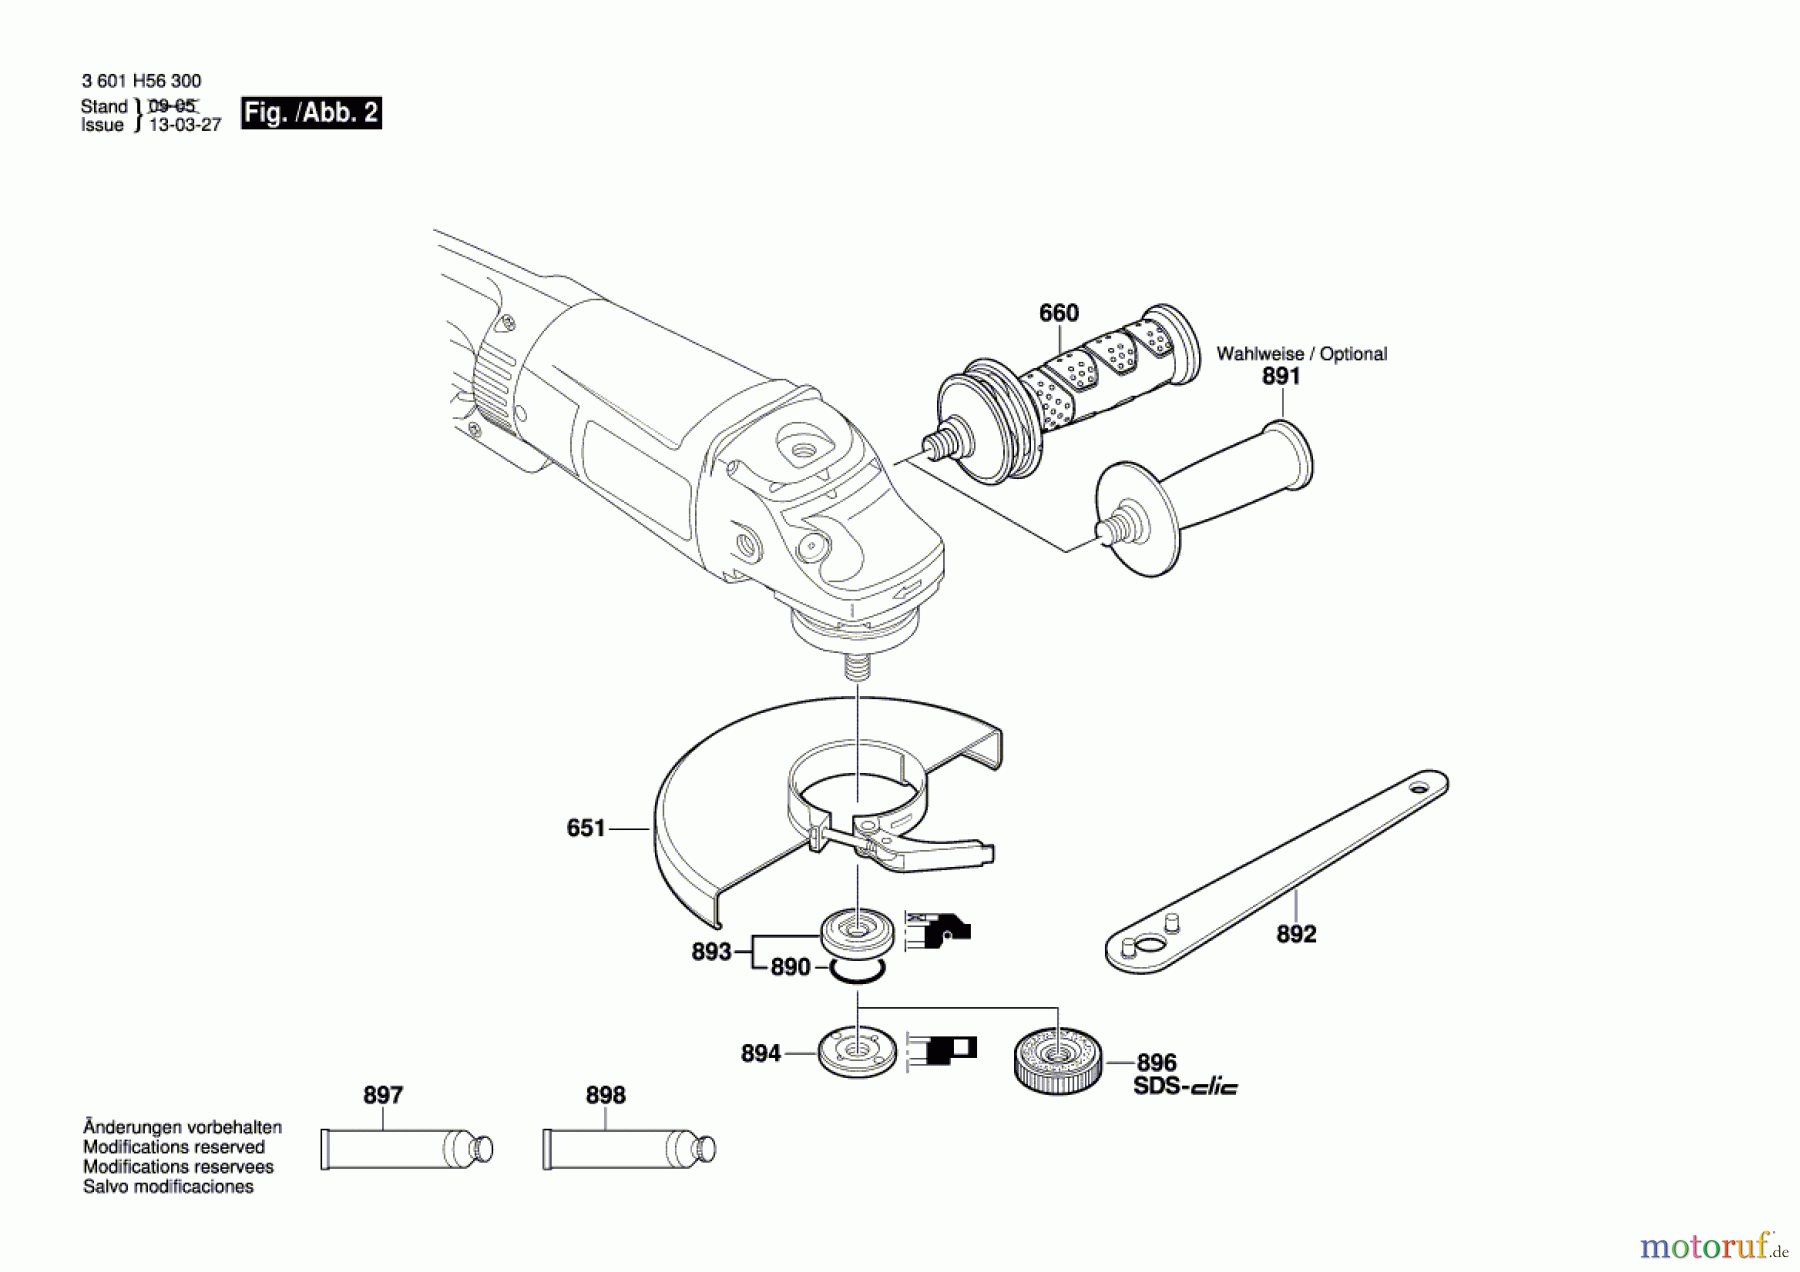  Bosch Werkzeug Winkelschleifer GWS 26-230 B Seite 2